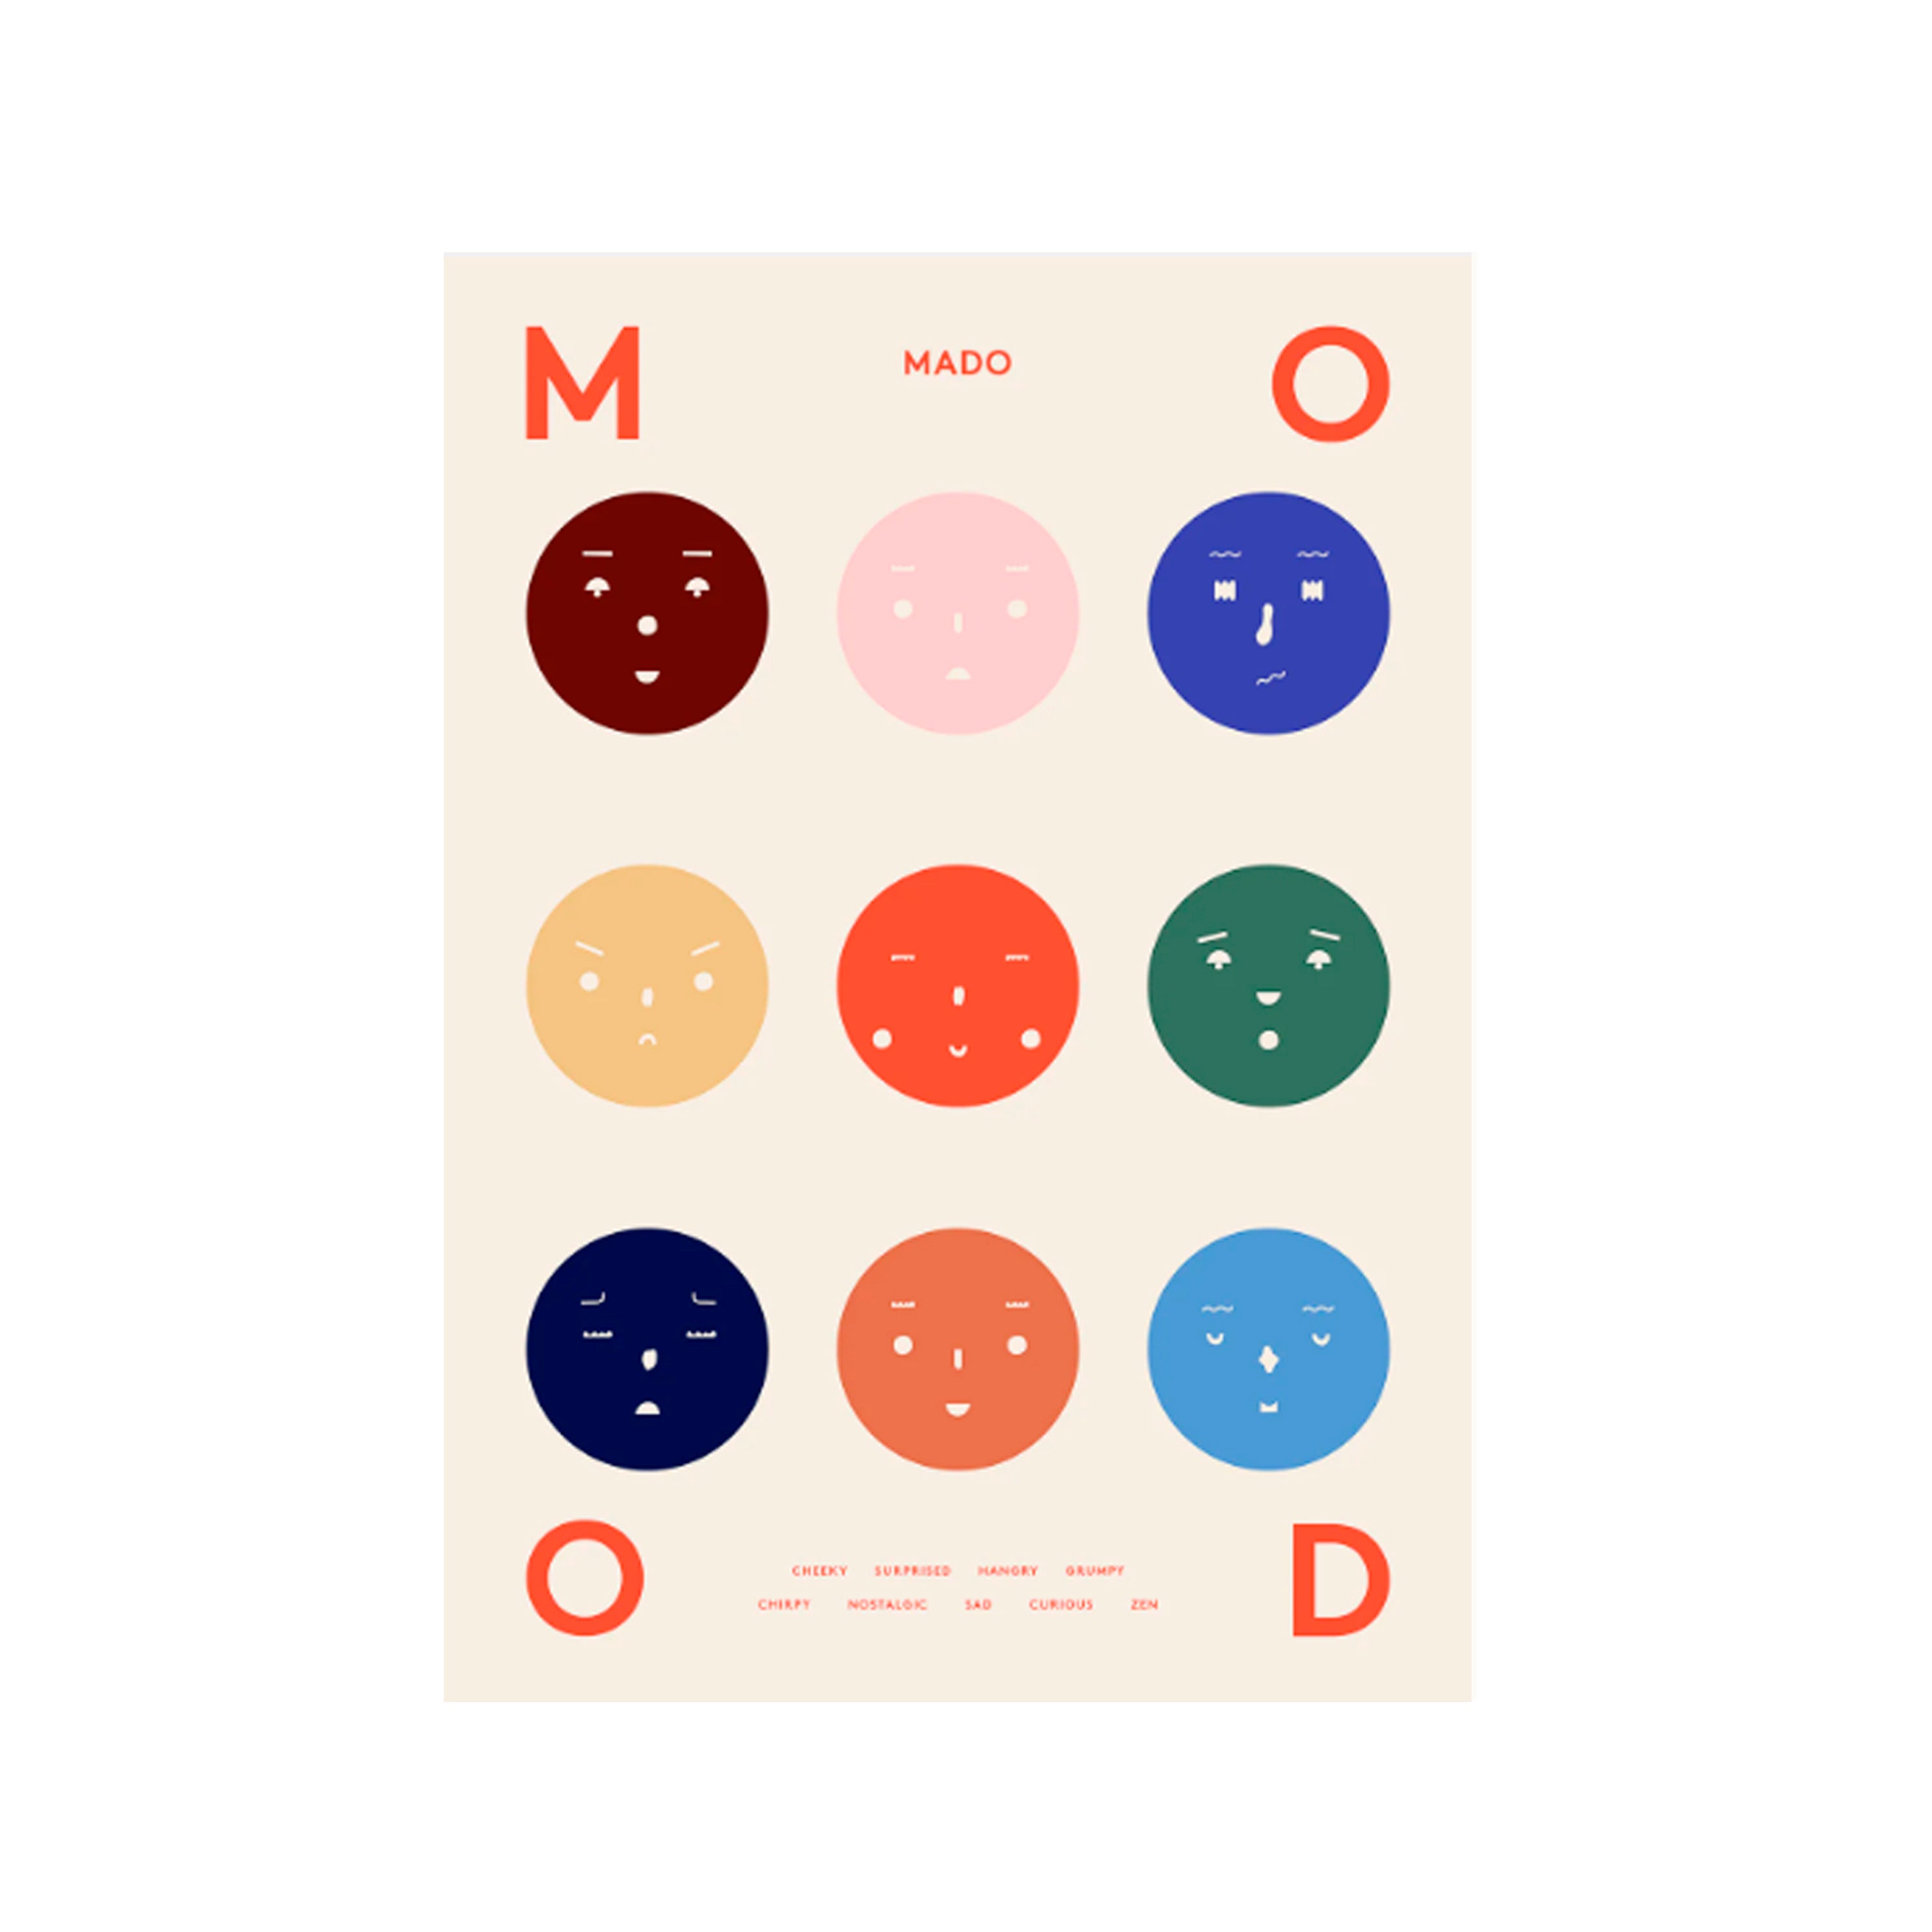 Nine moods